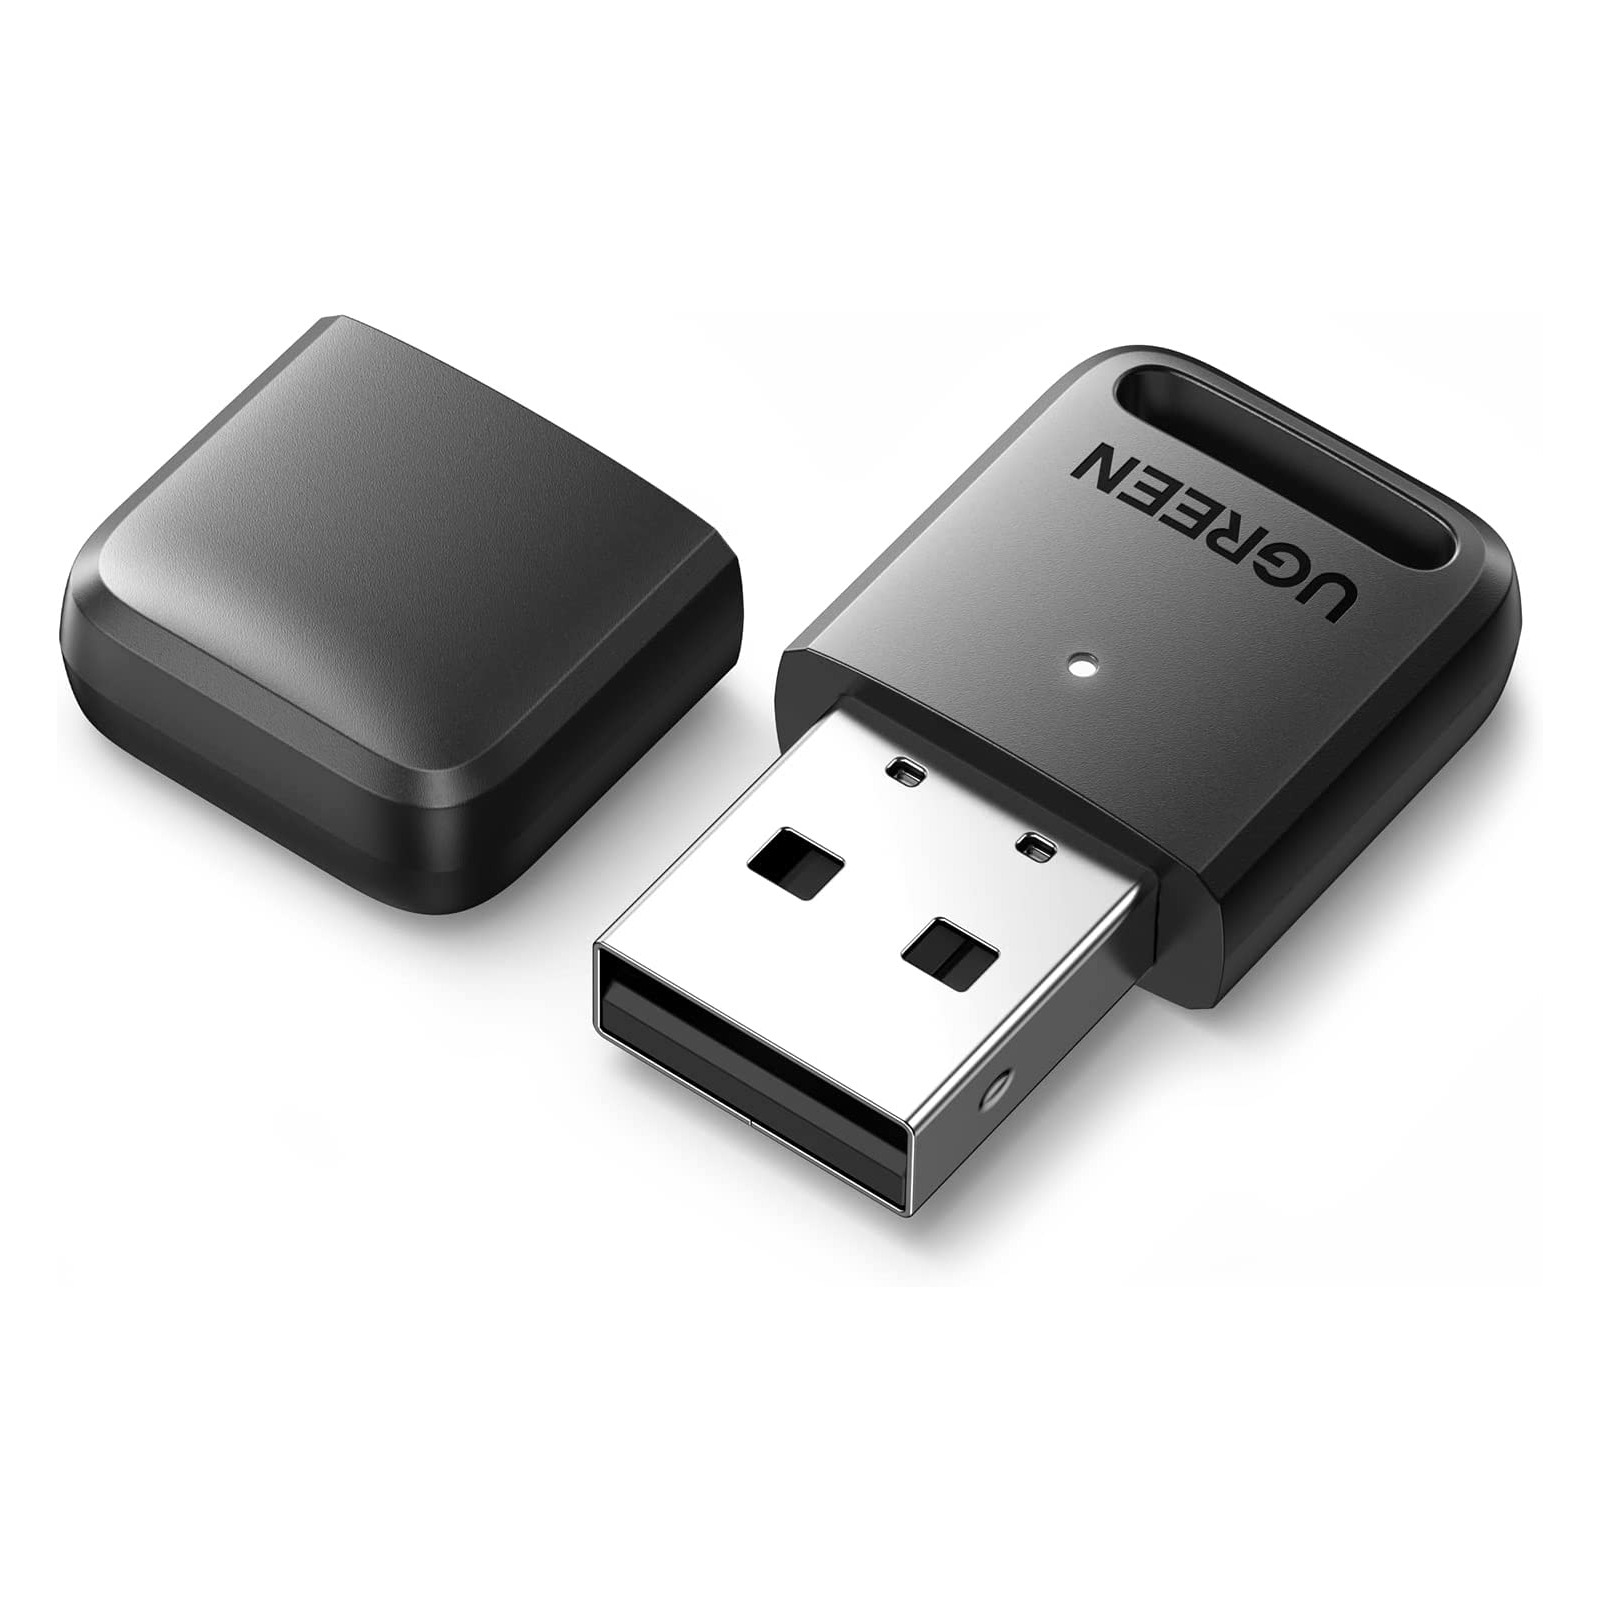 USB nhận Bluetooth 5.0 cho PC hổ trợ kết nối 5 thiết bị Bluetooth cùng lúc (CM390) Ugreen 80890